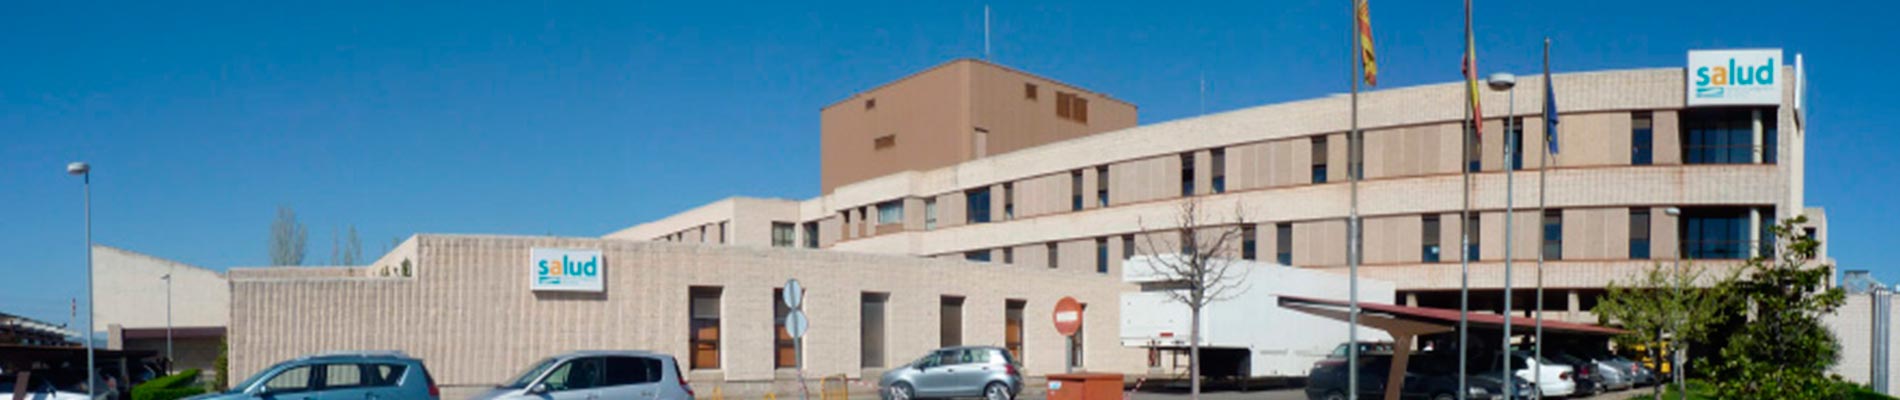 Ernest Lluch Hospital (Calatayud)